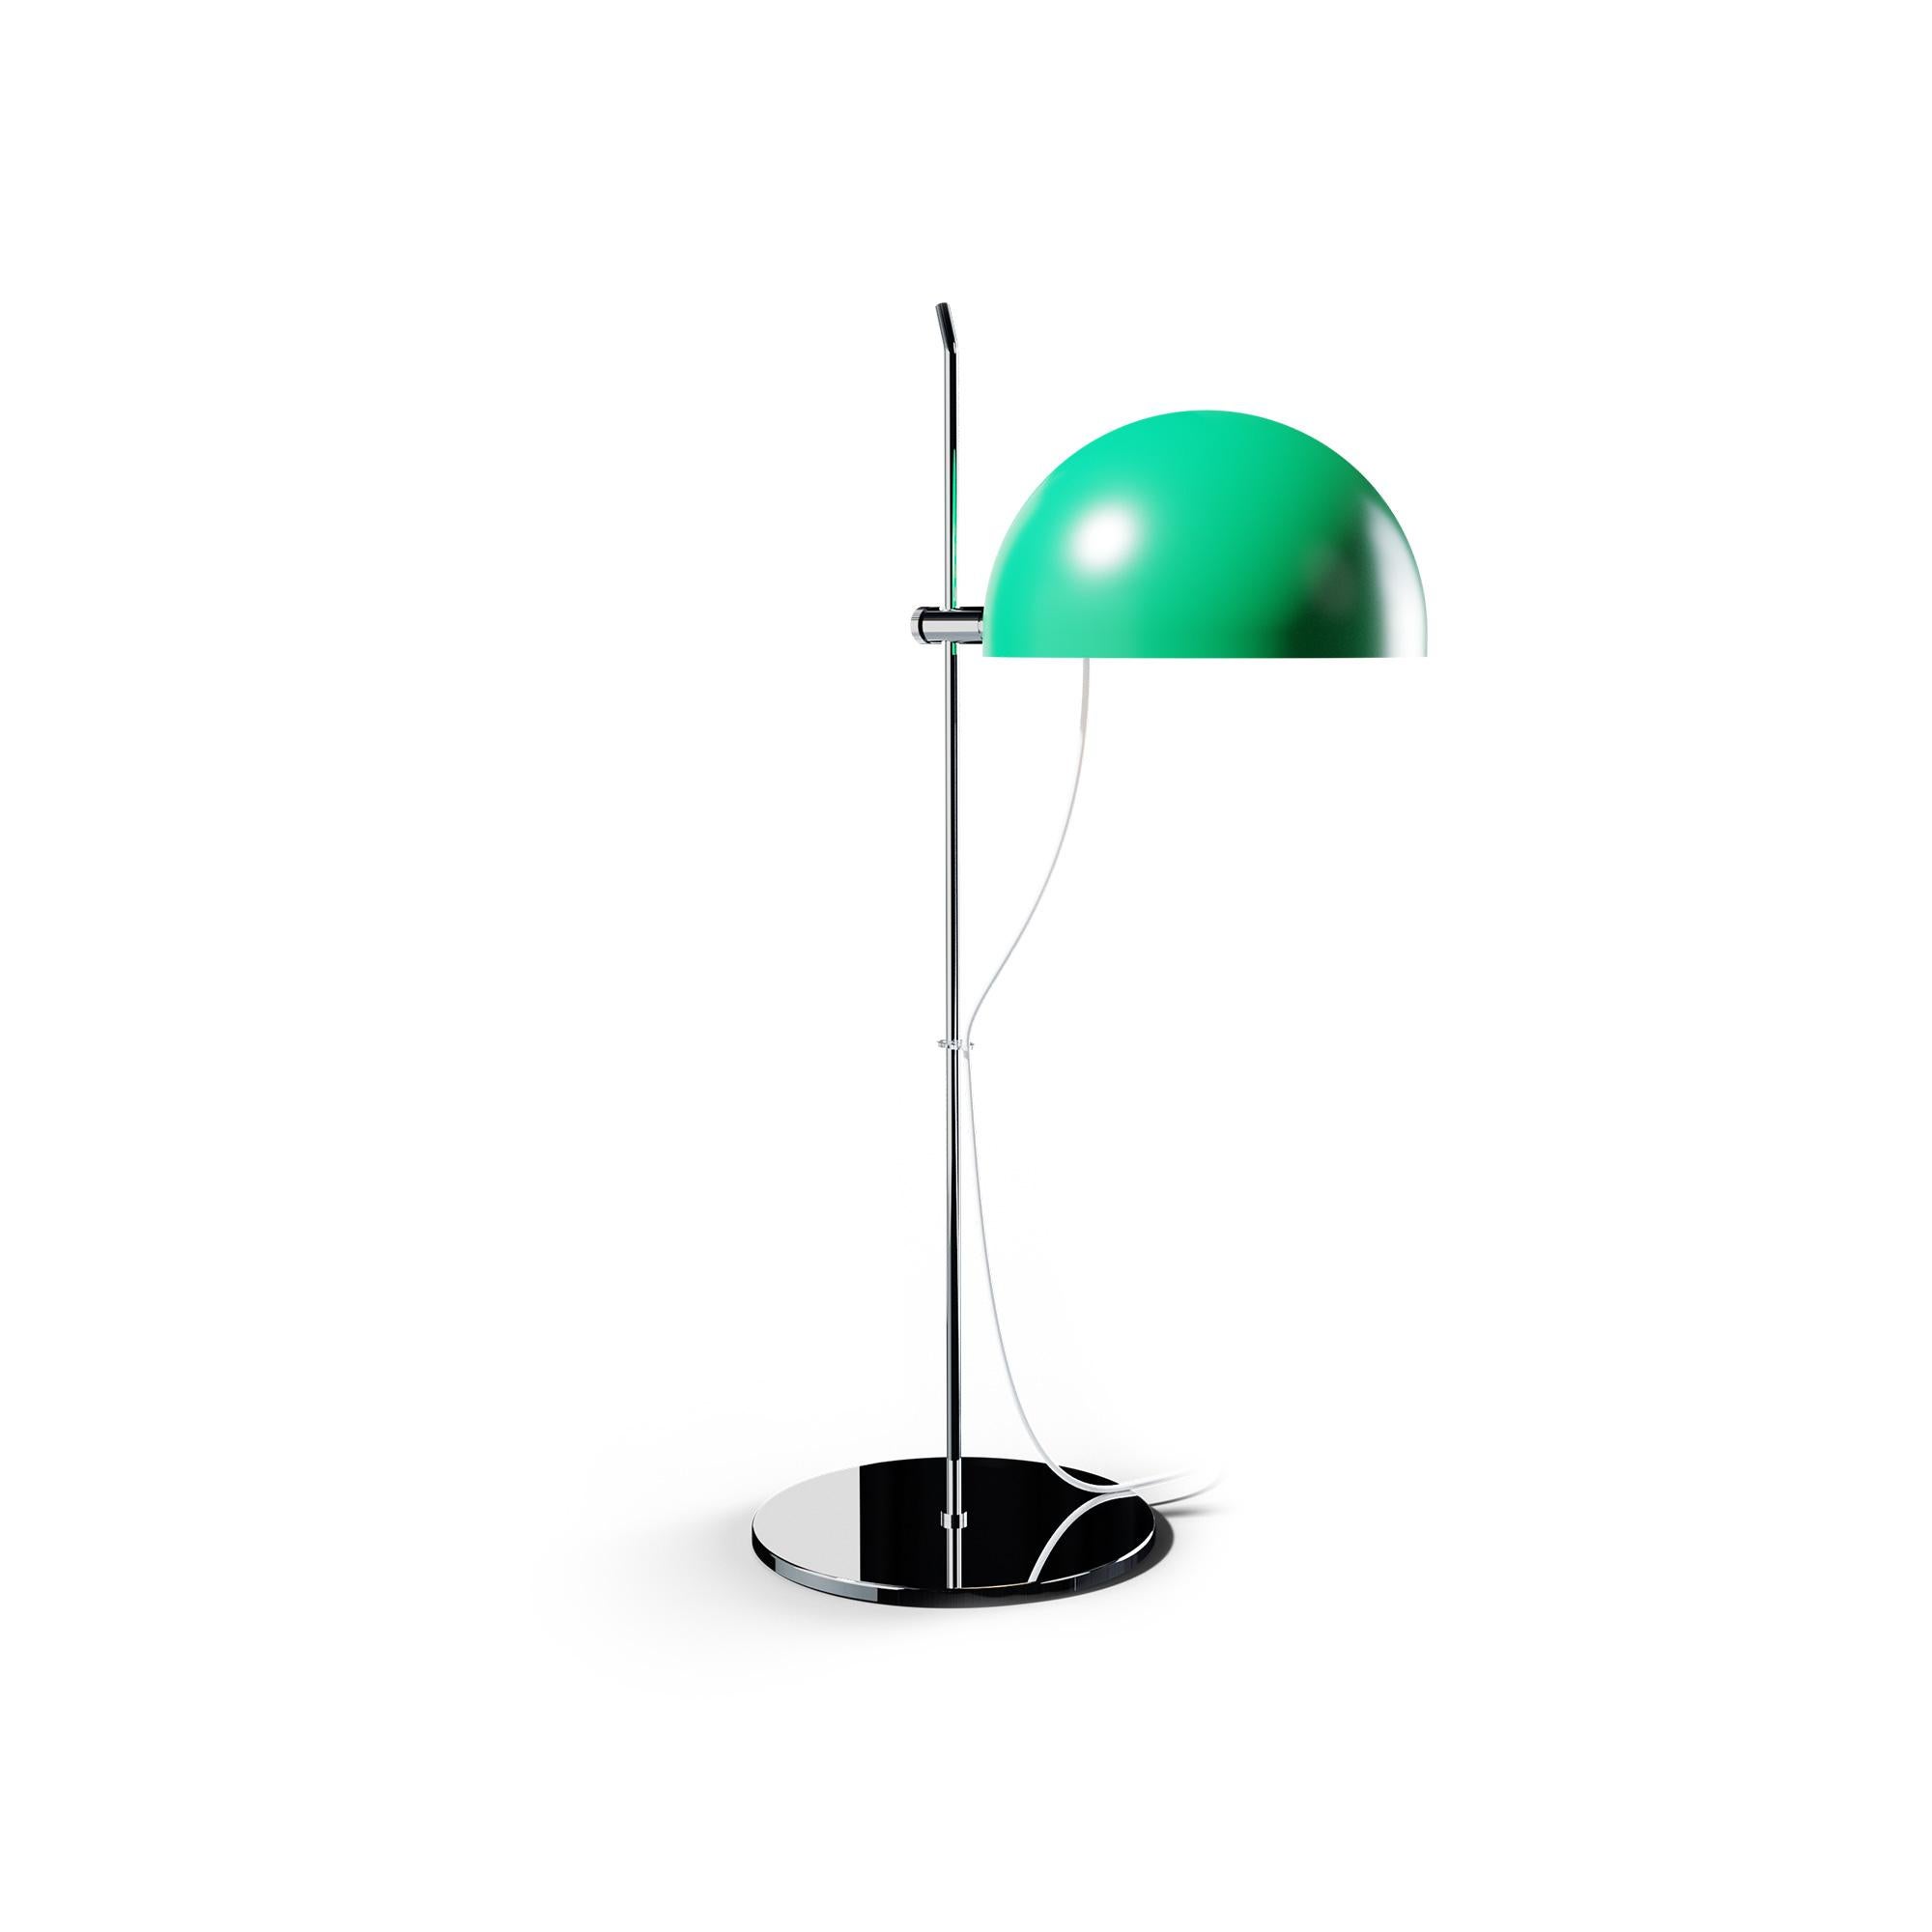 Alain Richard 'A21' Desk Lamp in Orange for Disderot For Sale 2